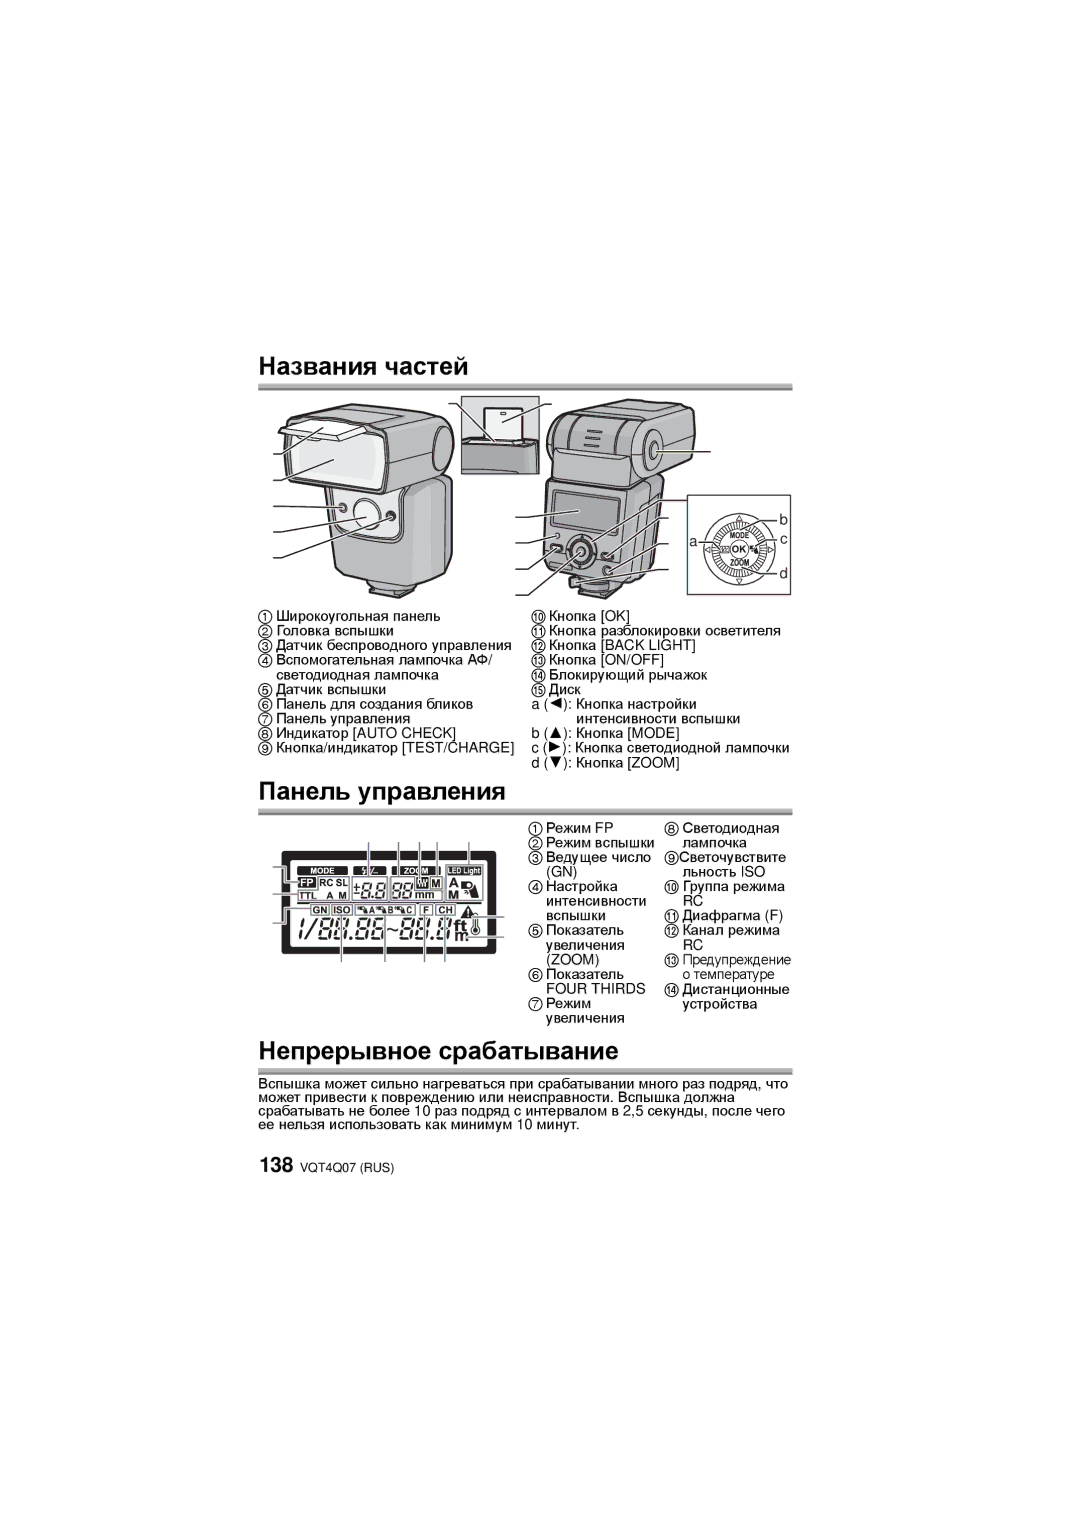 Panasonic DMW-FL360L operating instructions Названия частей, Панель управления, Непрерывное срабатывание 